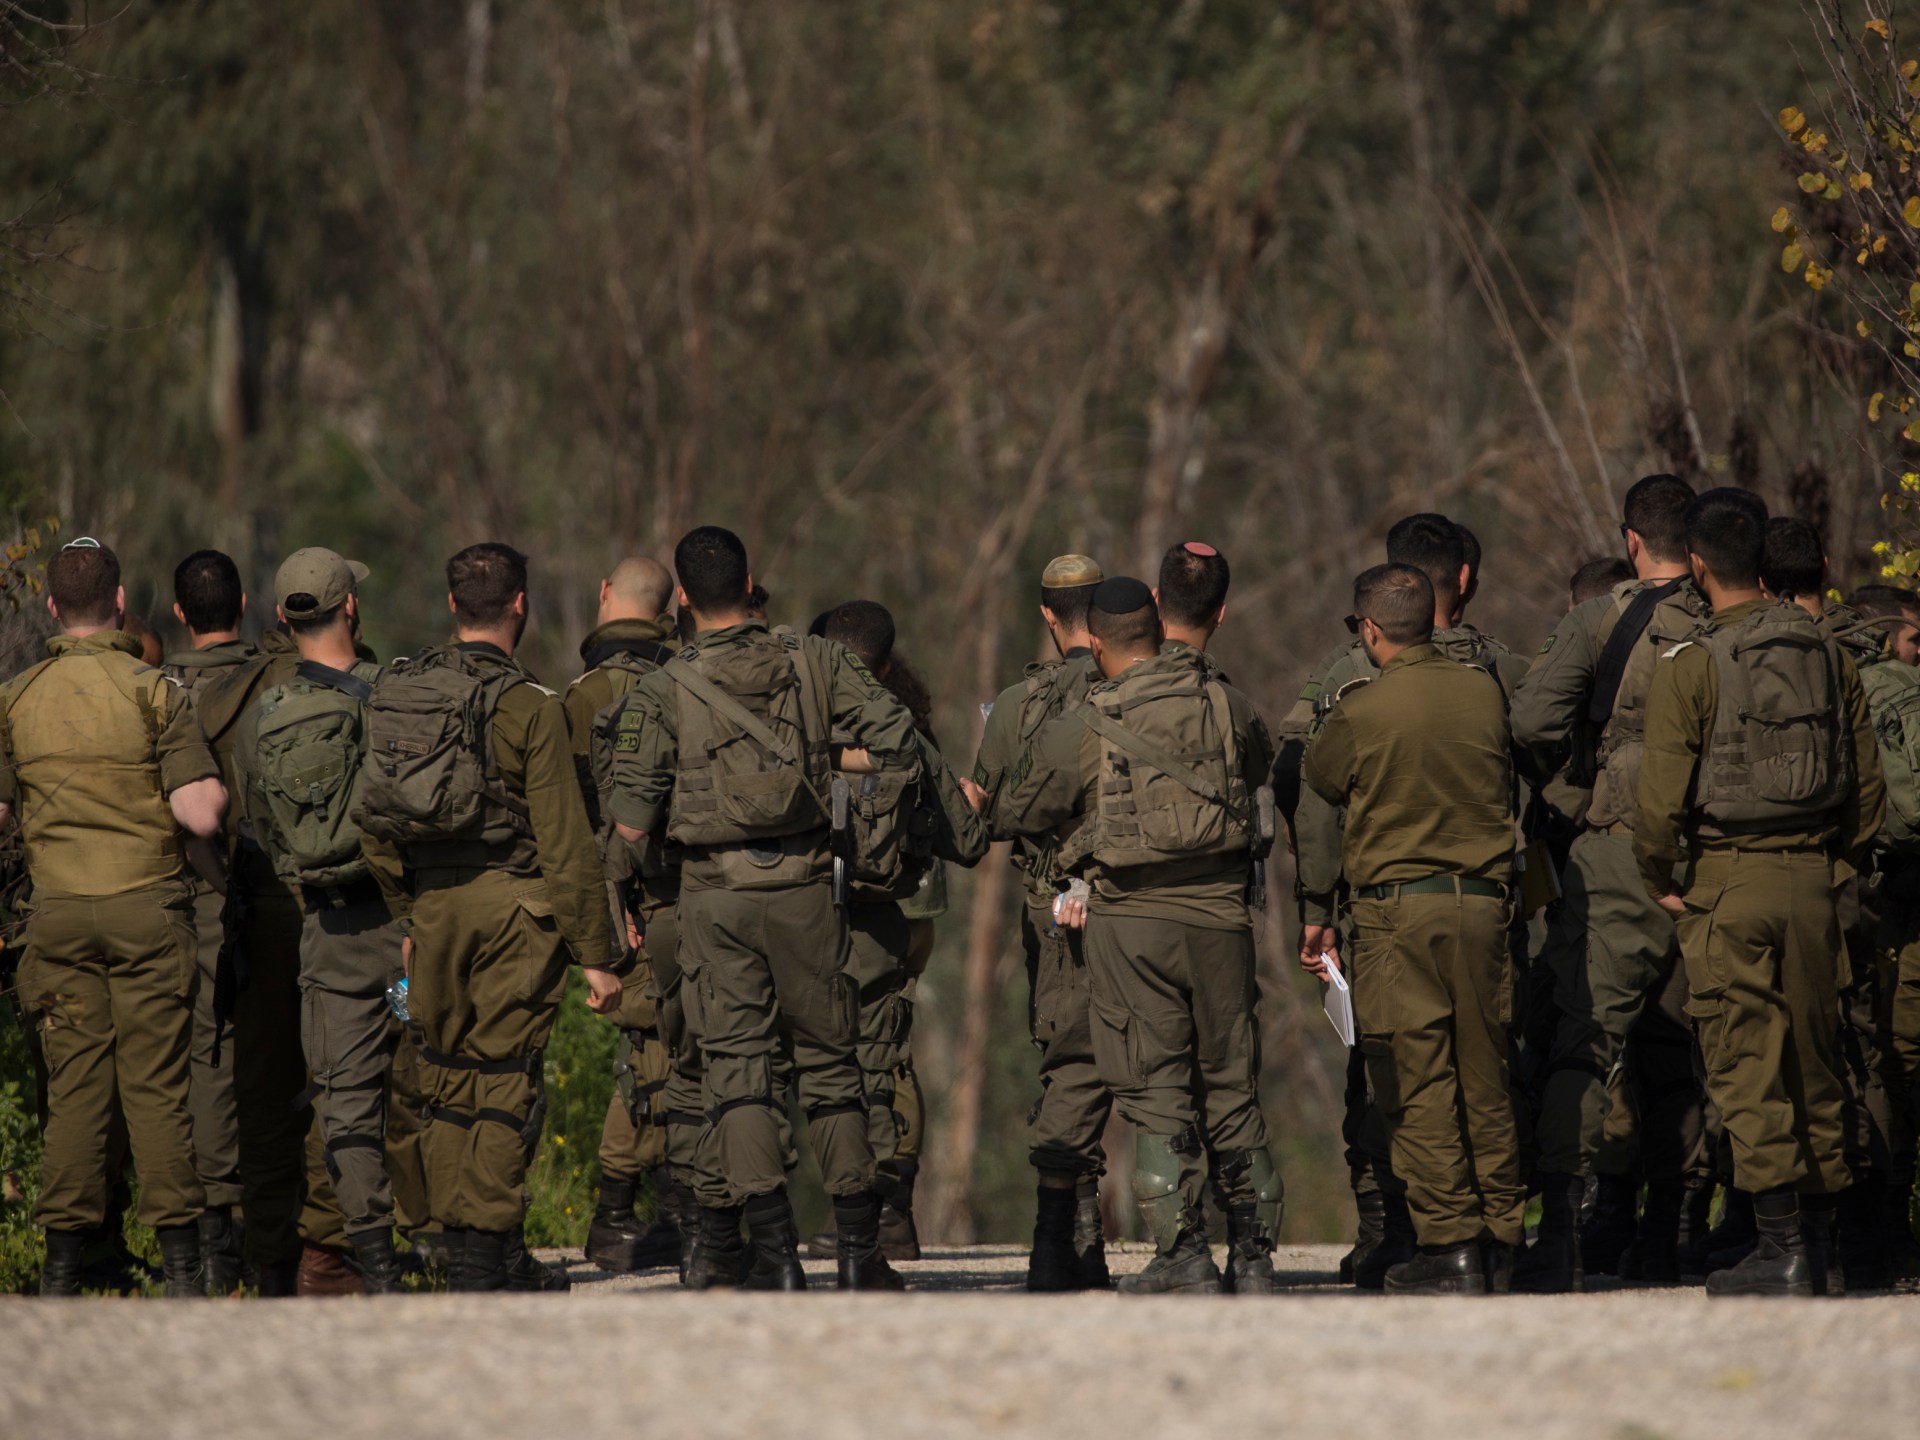 إصابة جندي إسرائيلي بصاروخ من جنوب لبنان | أخبار – البوكس نيوز